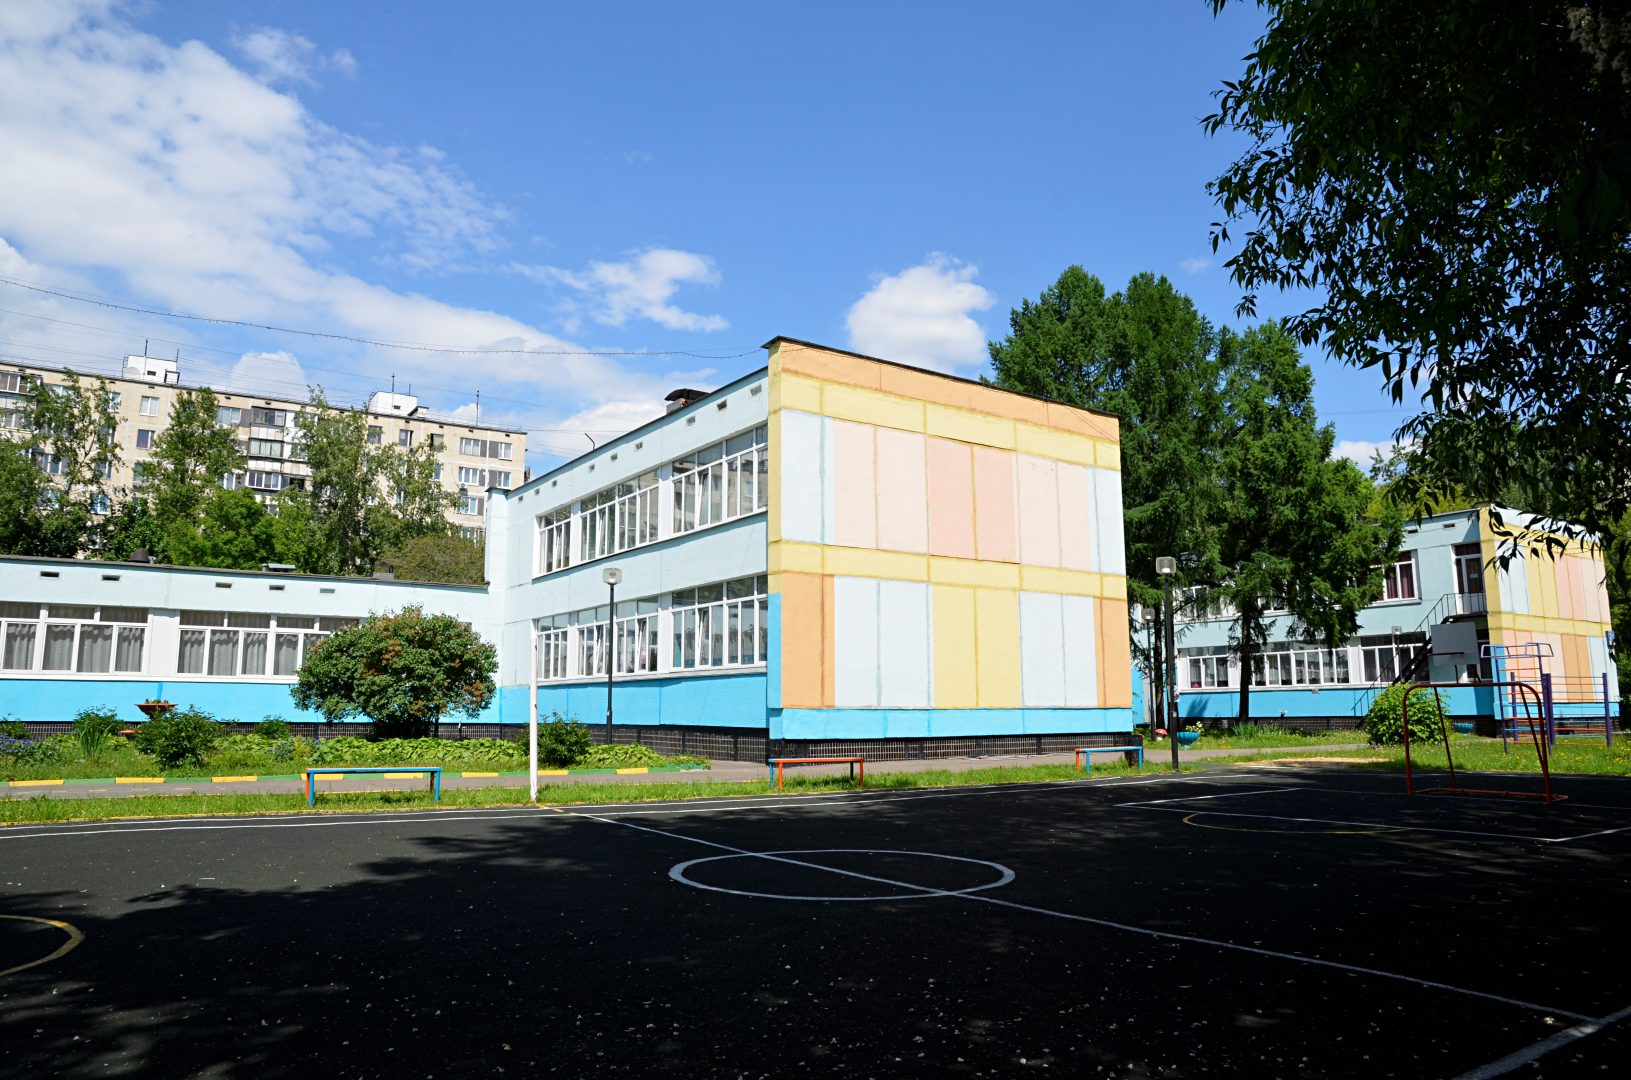 Около 40 образовательных объектов Новой Москве возведут девелоперы. Фото: Анна Быкова, «Вечерняя Москва»